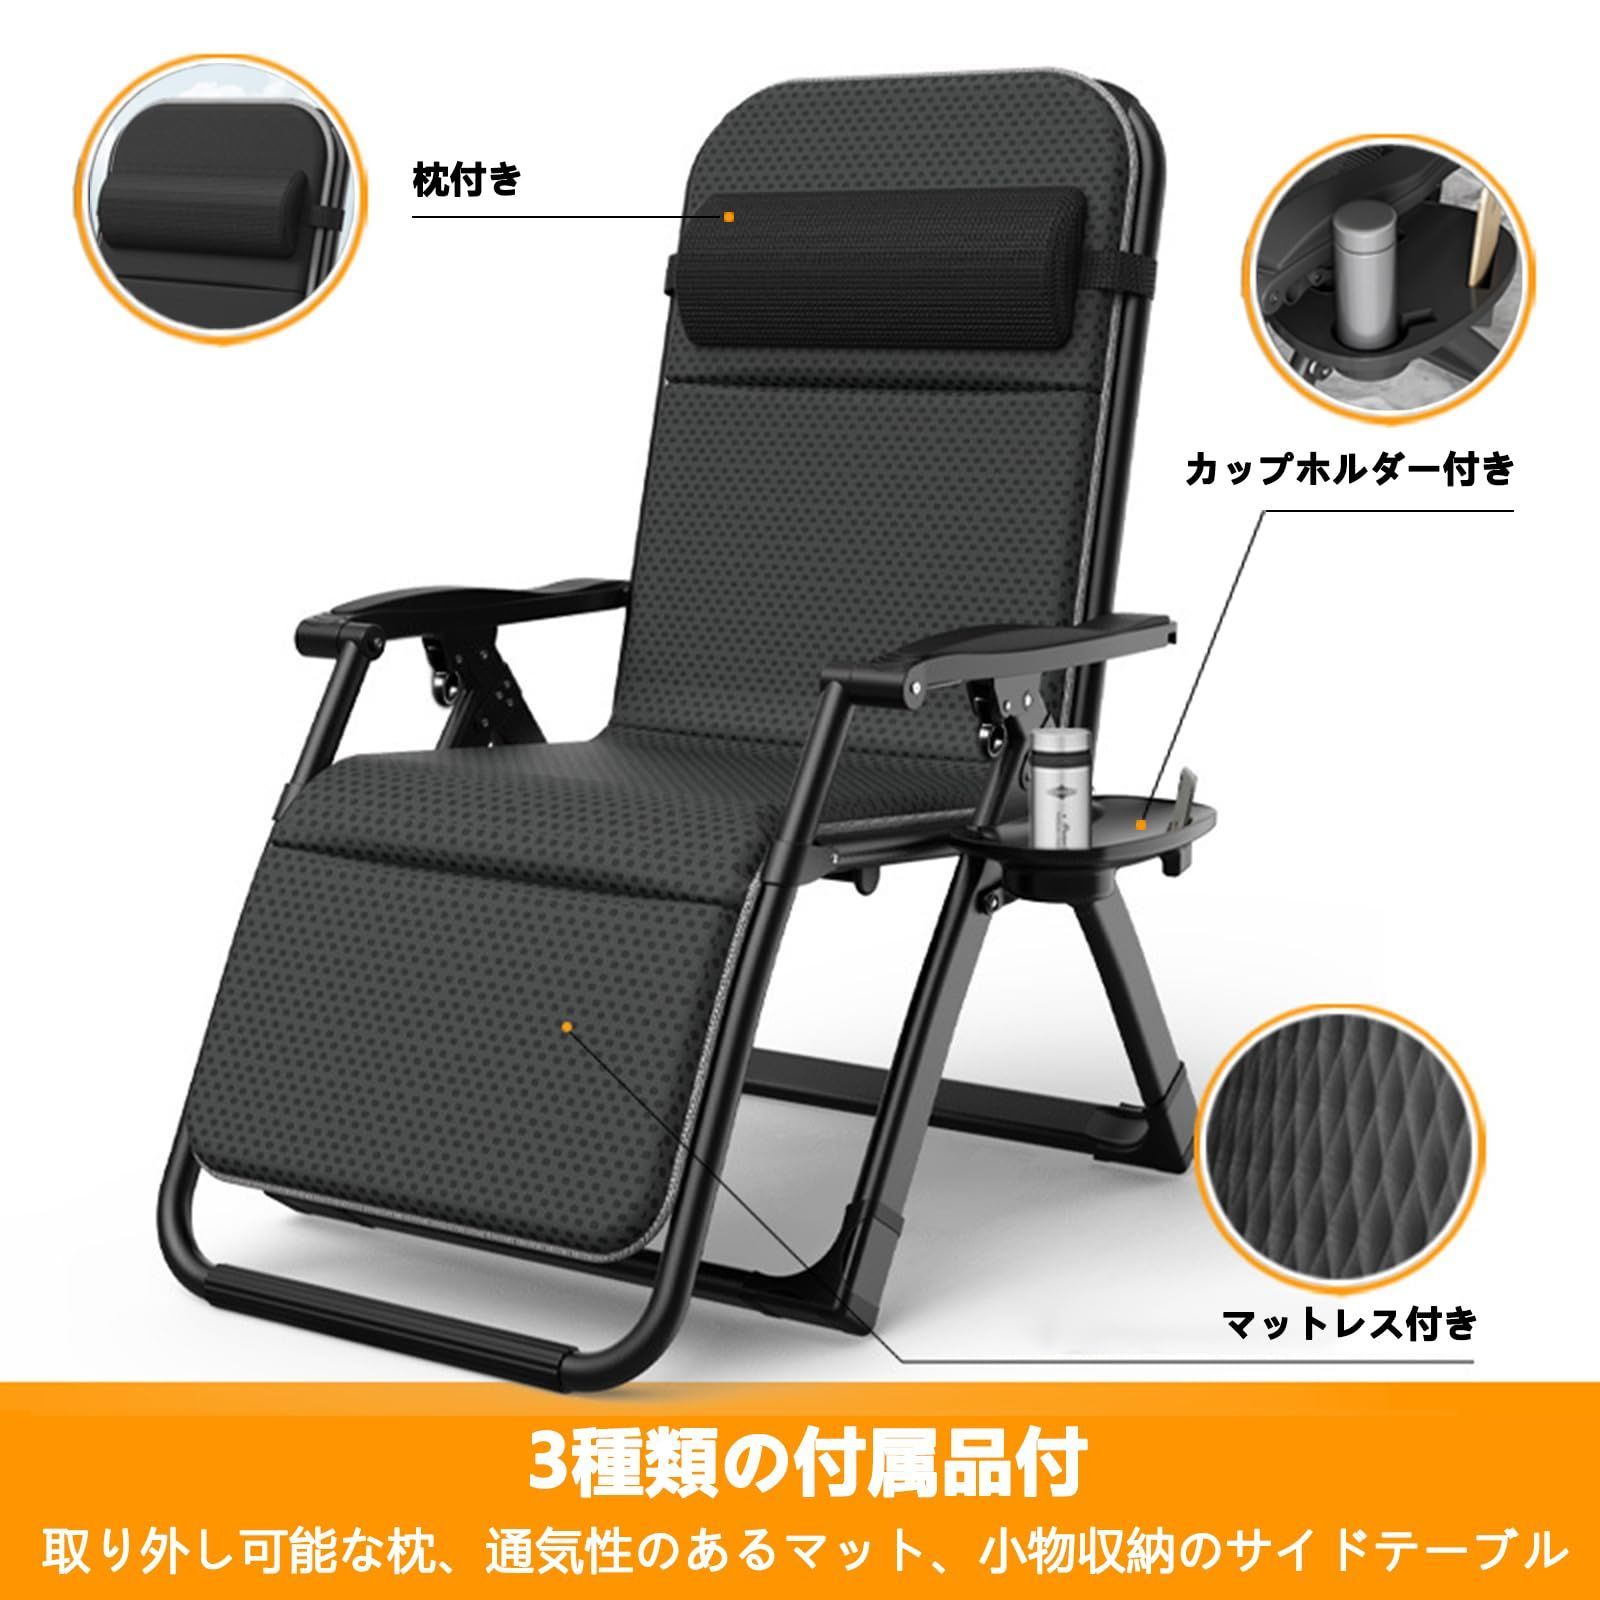 新着商品】リクライニングチェア 折りたたみ式 アウトドアチェア 椅子 